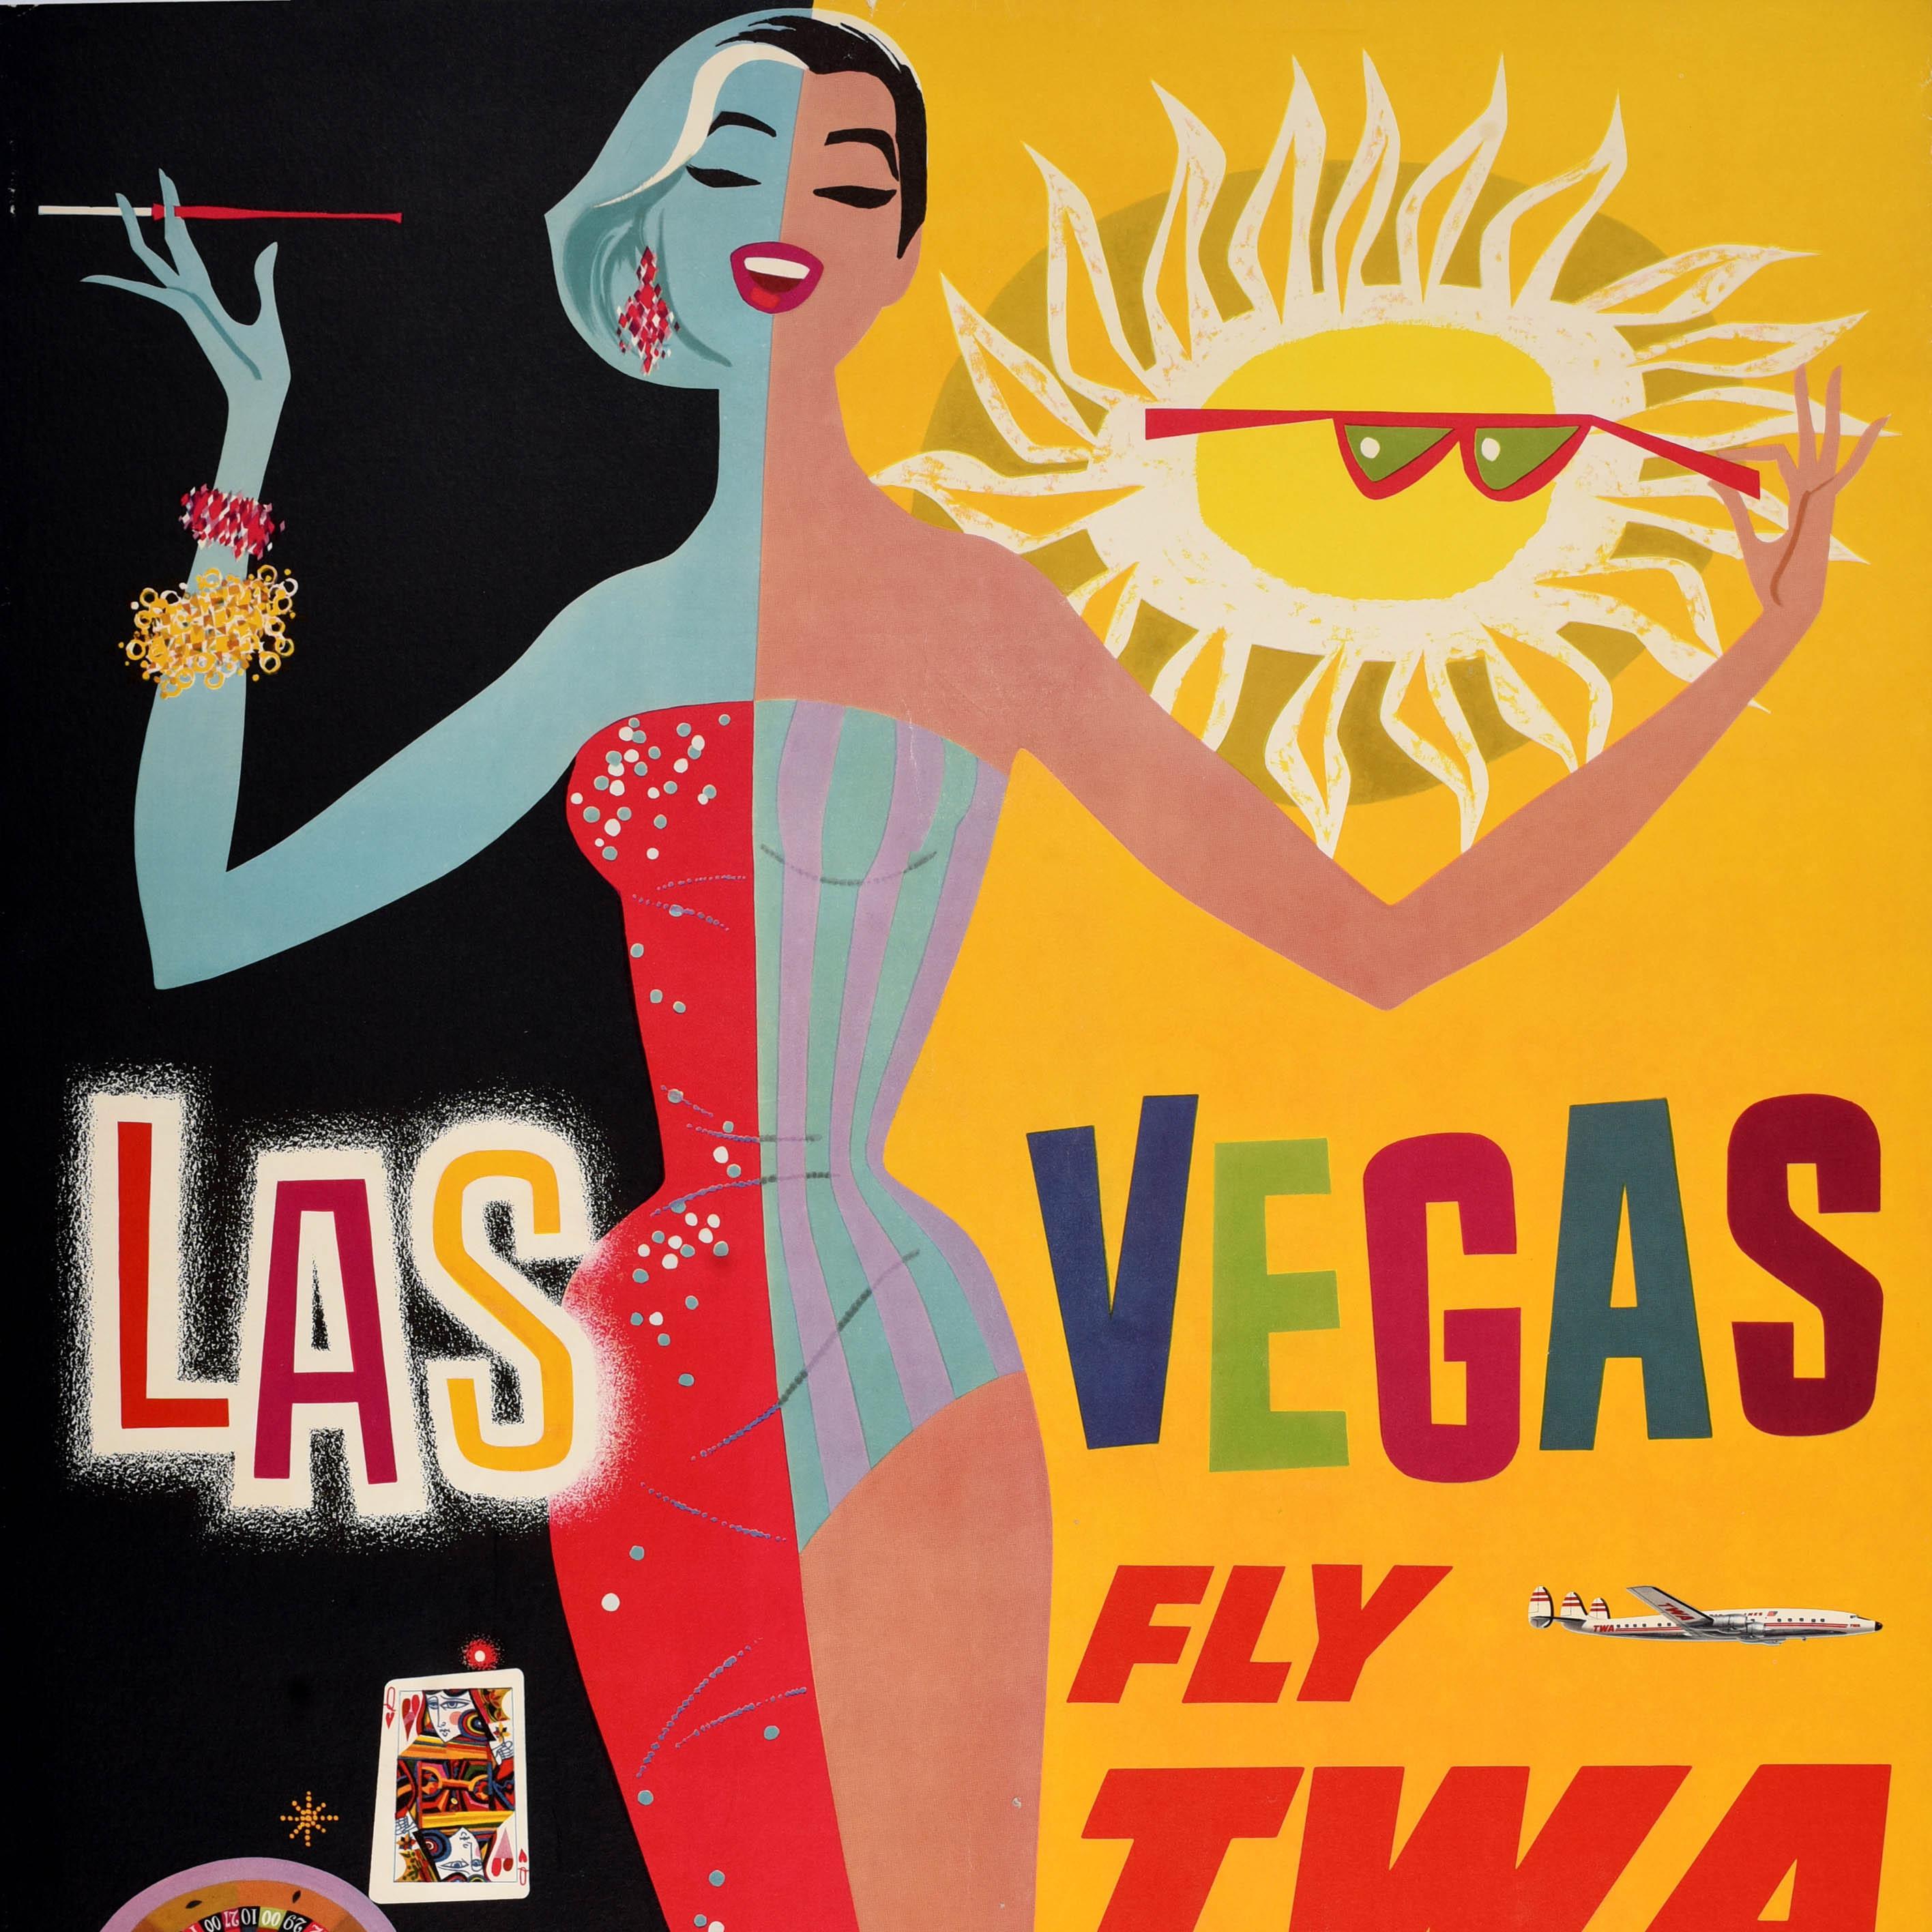 Affiche originale de voyage pour la compagnie aérienne Las Vegas Fly TWA Trans World Airlines, datant du milieu du siècle dernier, avec un dessin coloré de l'artiste américain David Klein (1918-2005) représentant une élégante dame souriante